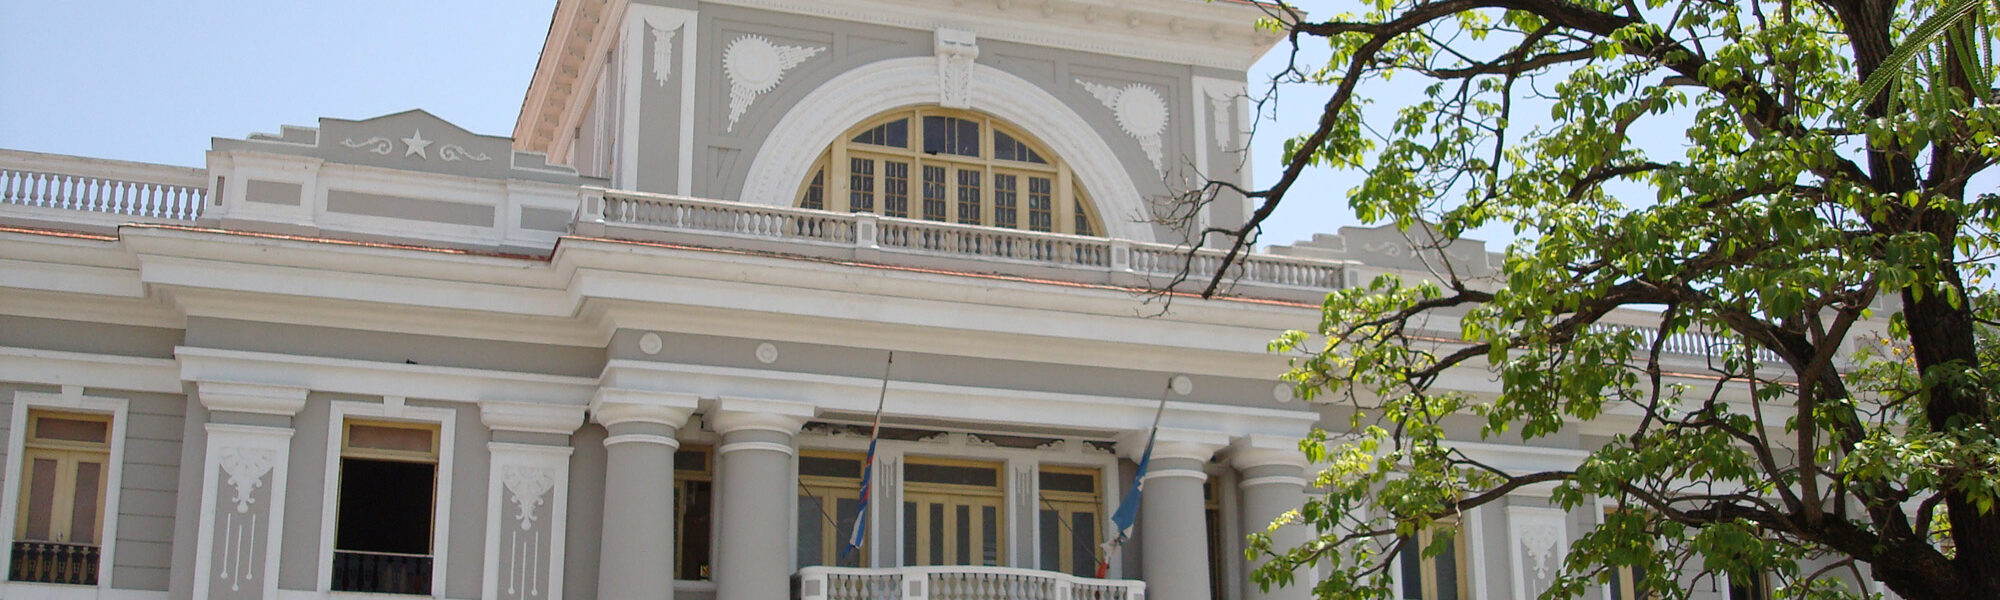 Palacio del Ayuntamiento - Cienfuegos - Cuba